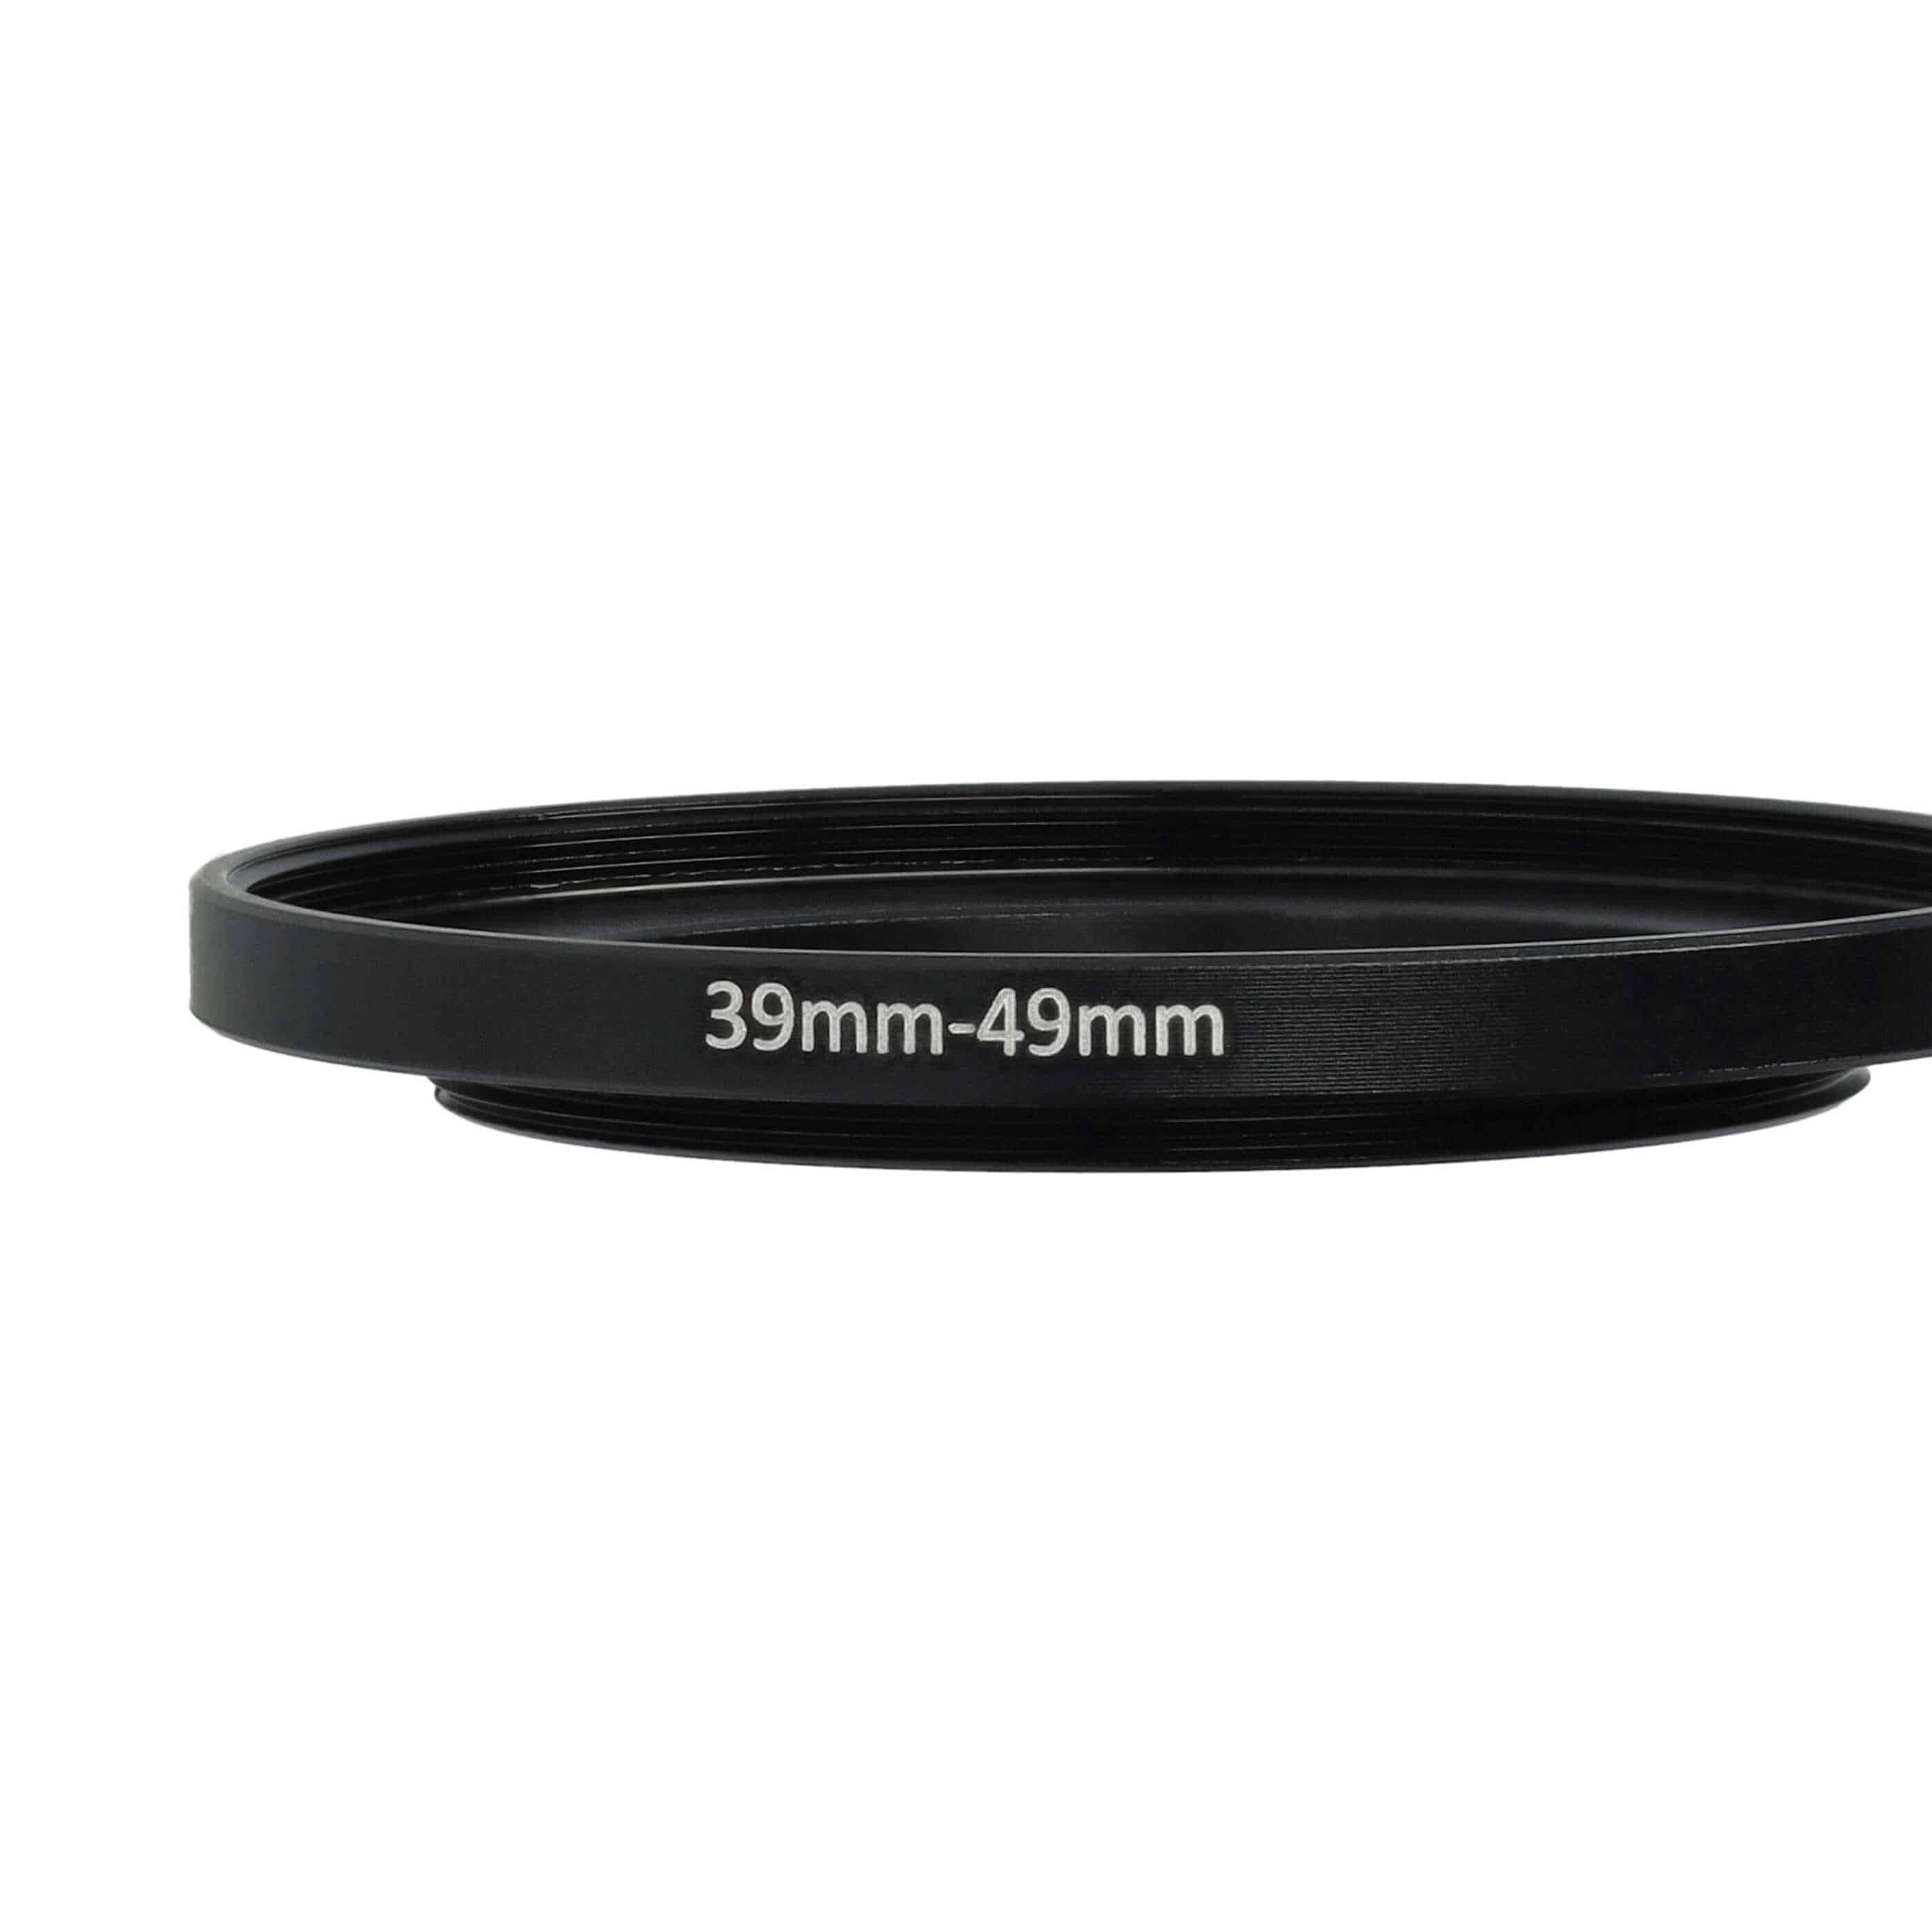 Redukcja filtrowa adapter 39 mm na 49 mm na różne obiektywy 